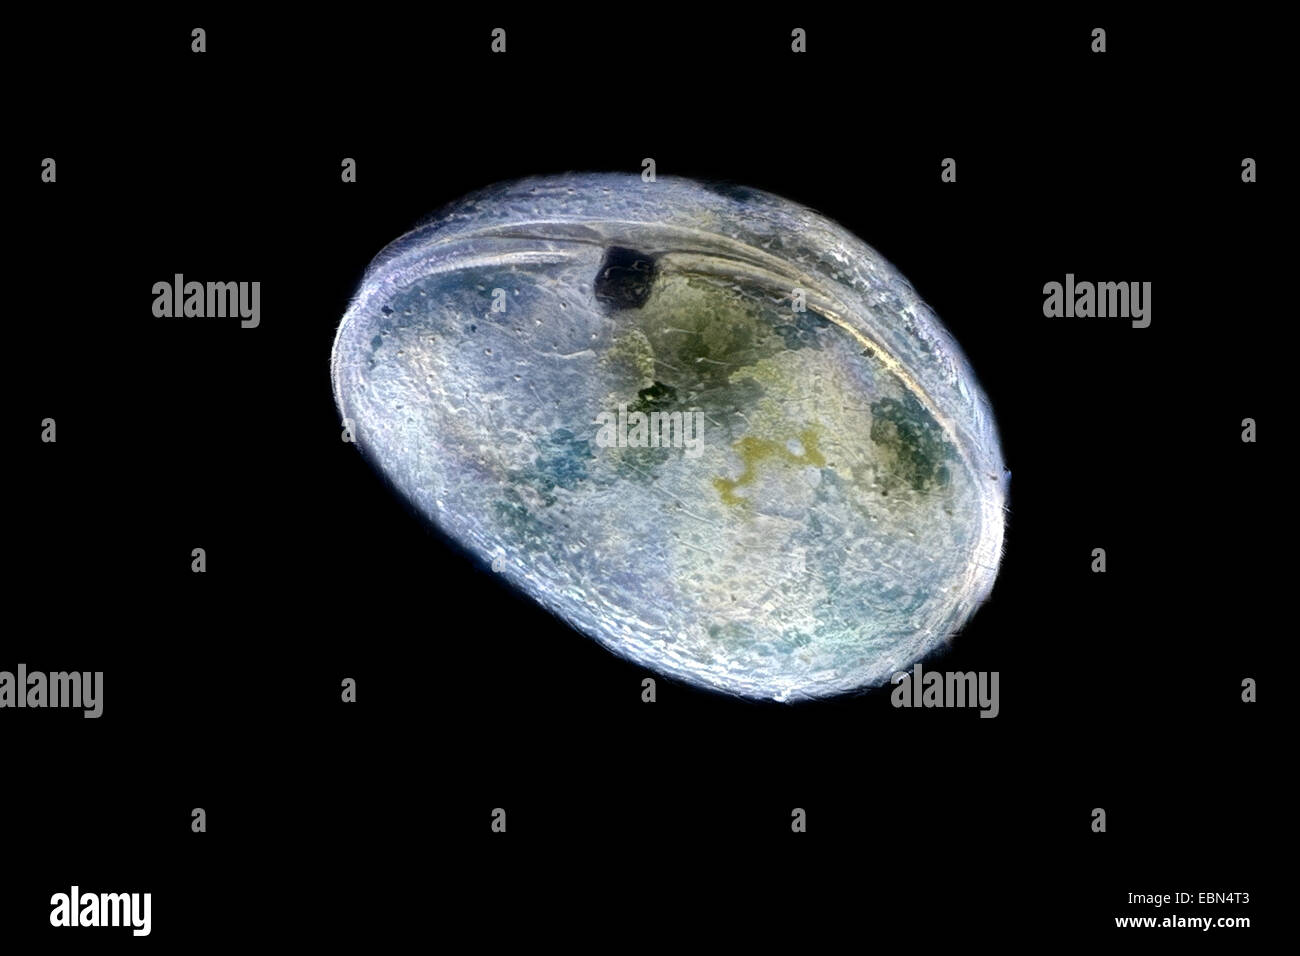 Muschelkrebsen, Schale bedeckt Krustentier, seed Garnelen (Ostracoda) im Dunkelfeld Stockfoto